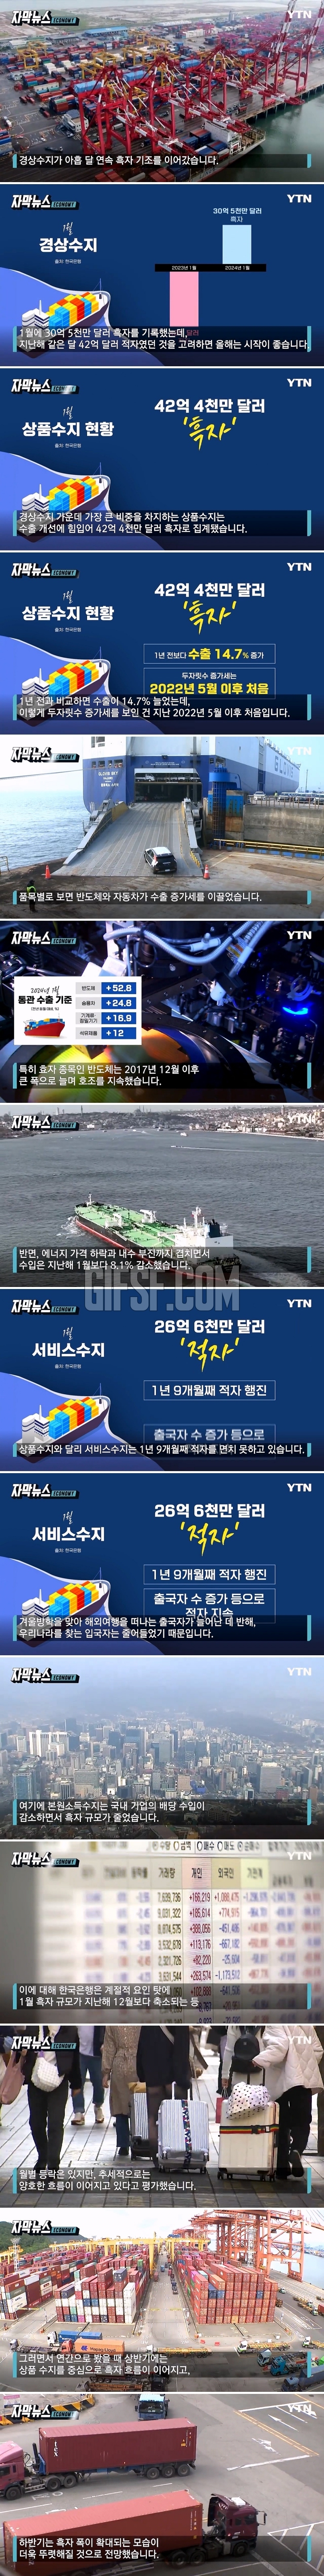 9개월 연속 흑자…기대감 고조되는 한국 경제.jpg